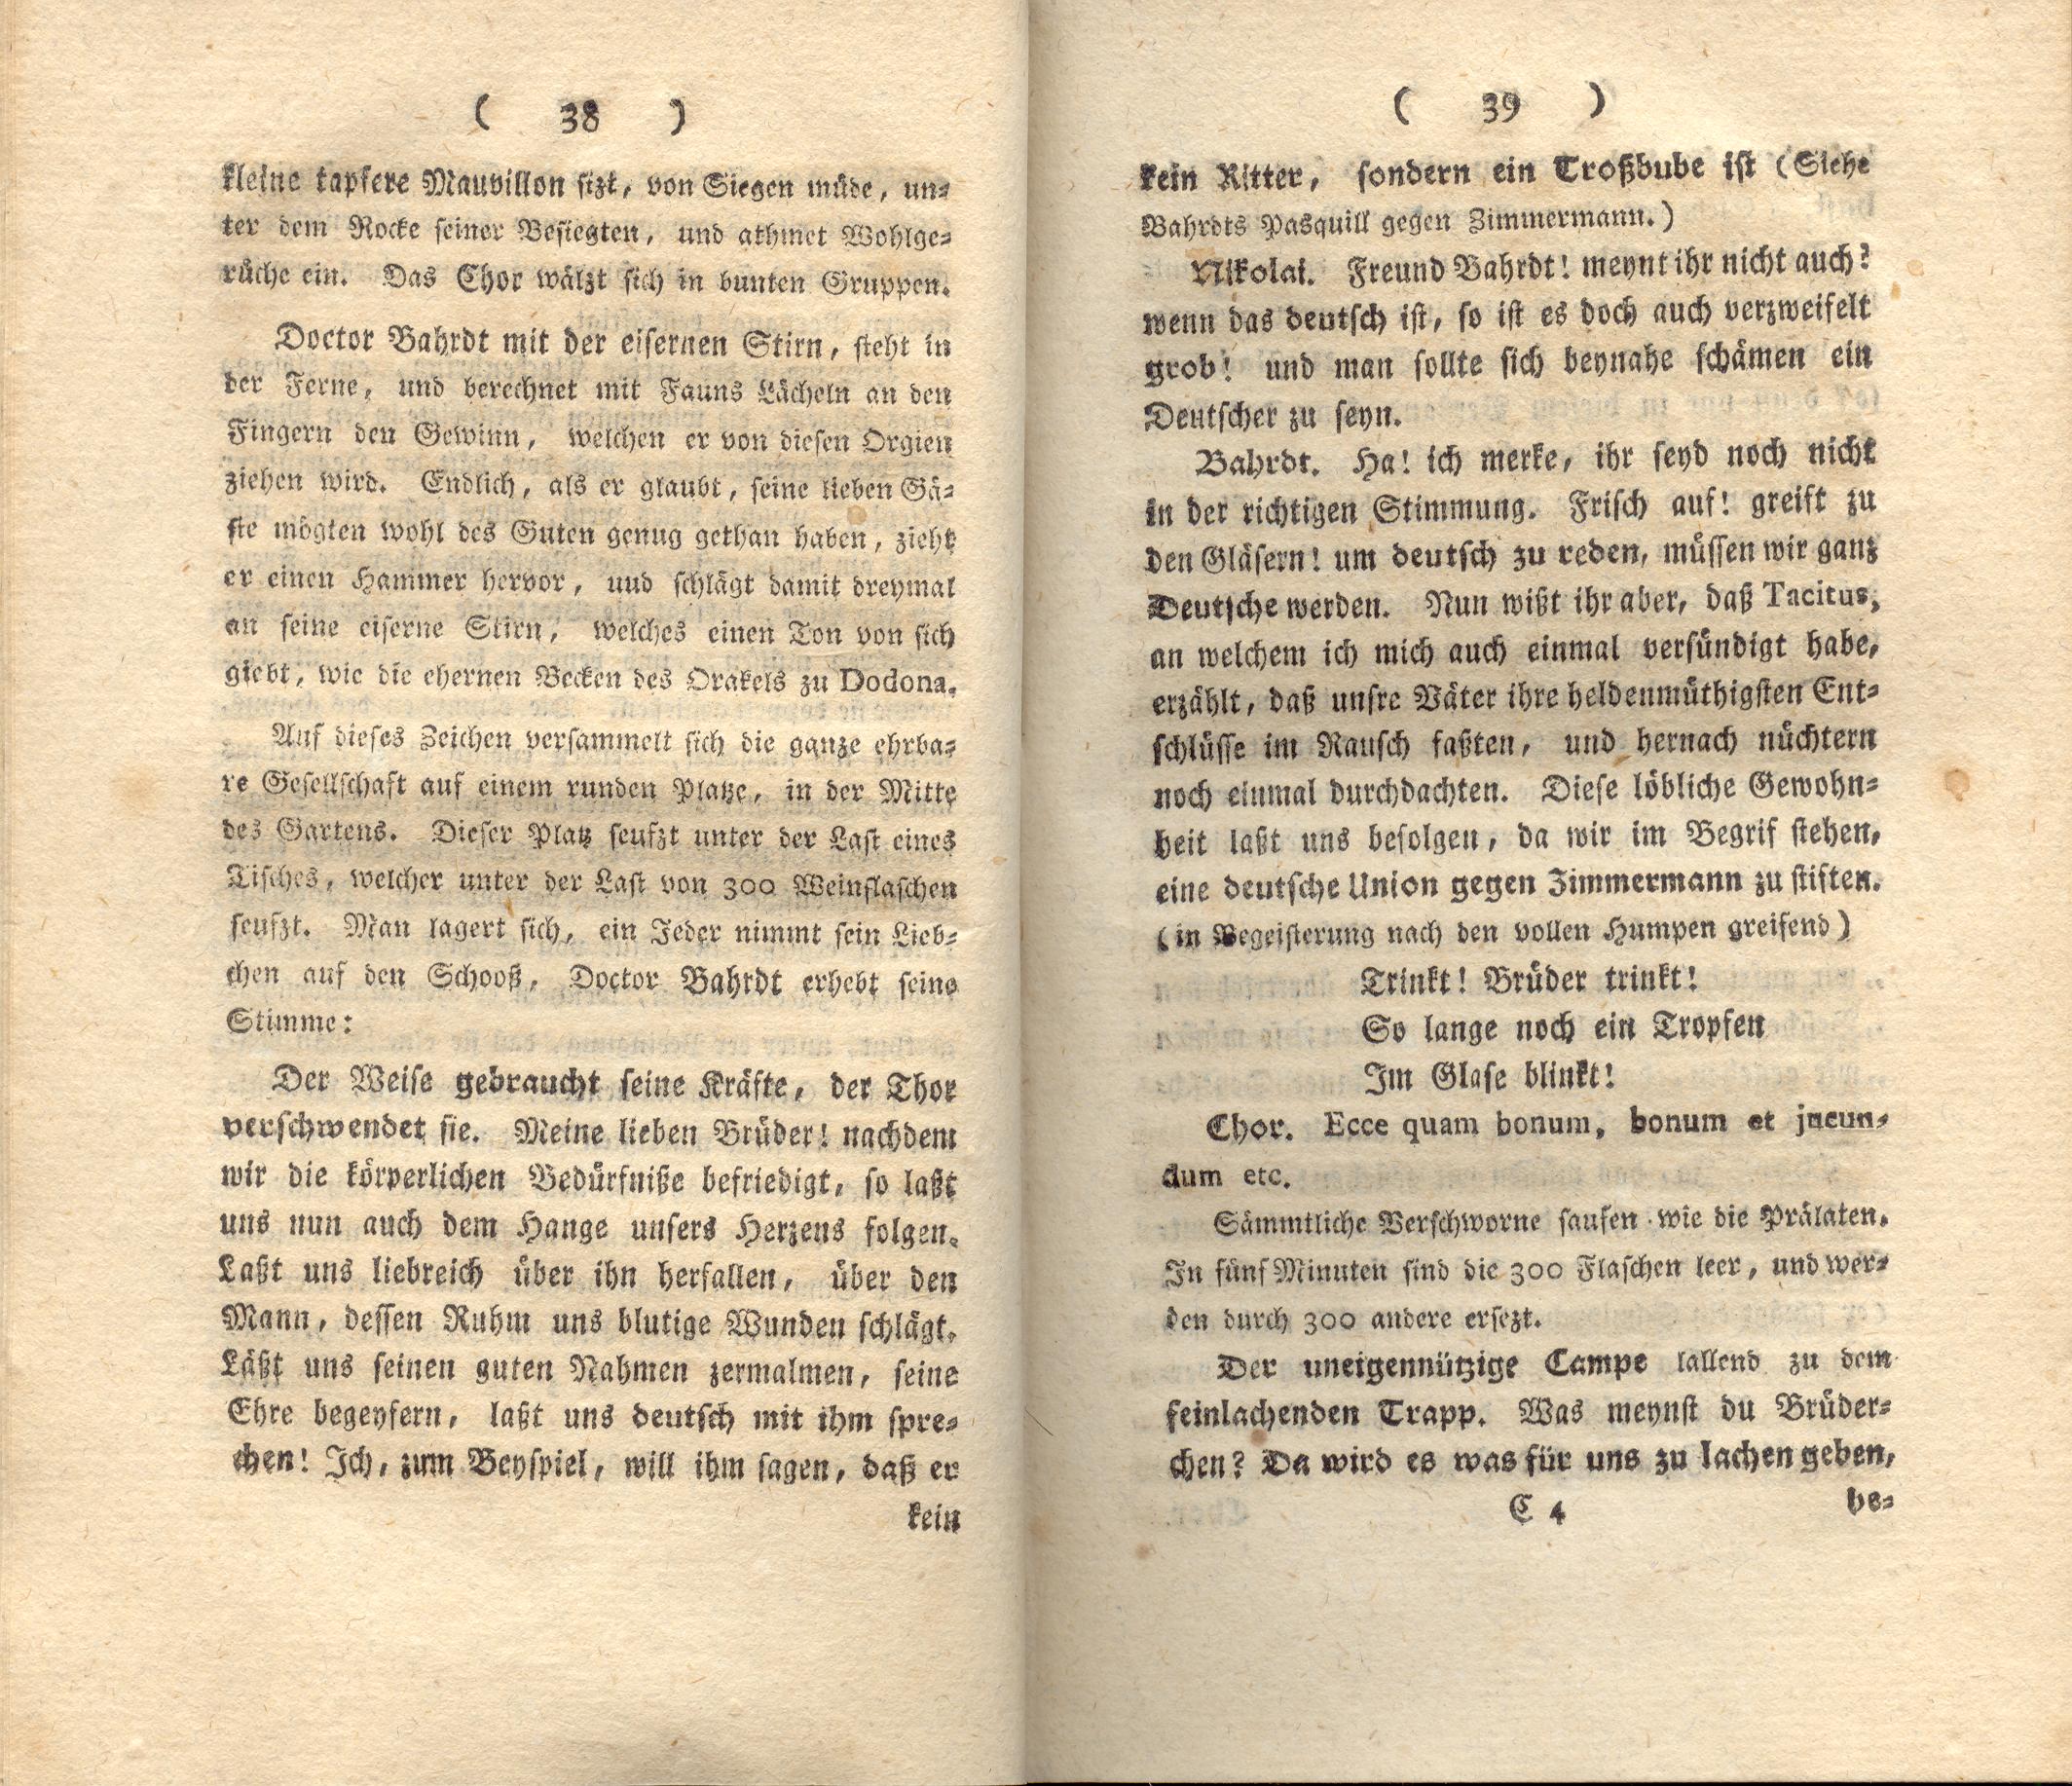 Doctor Bahrdt mit der eisernen Stirn (1790) | 21. (38-39) Main body of text